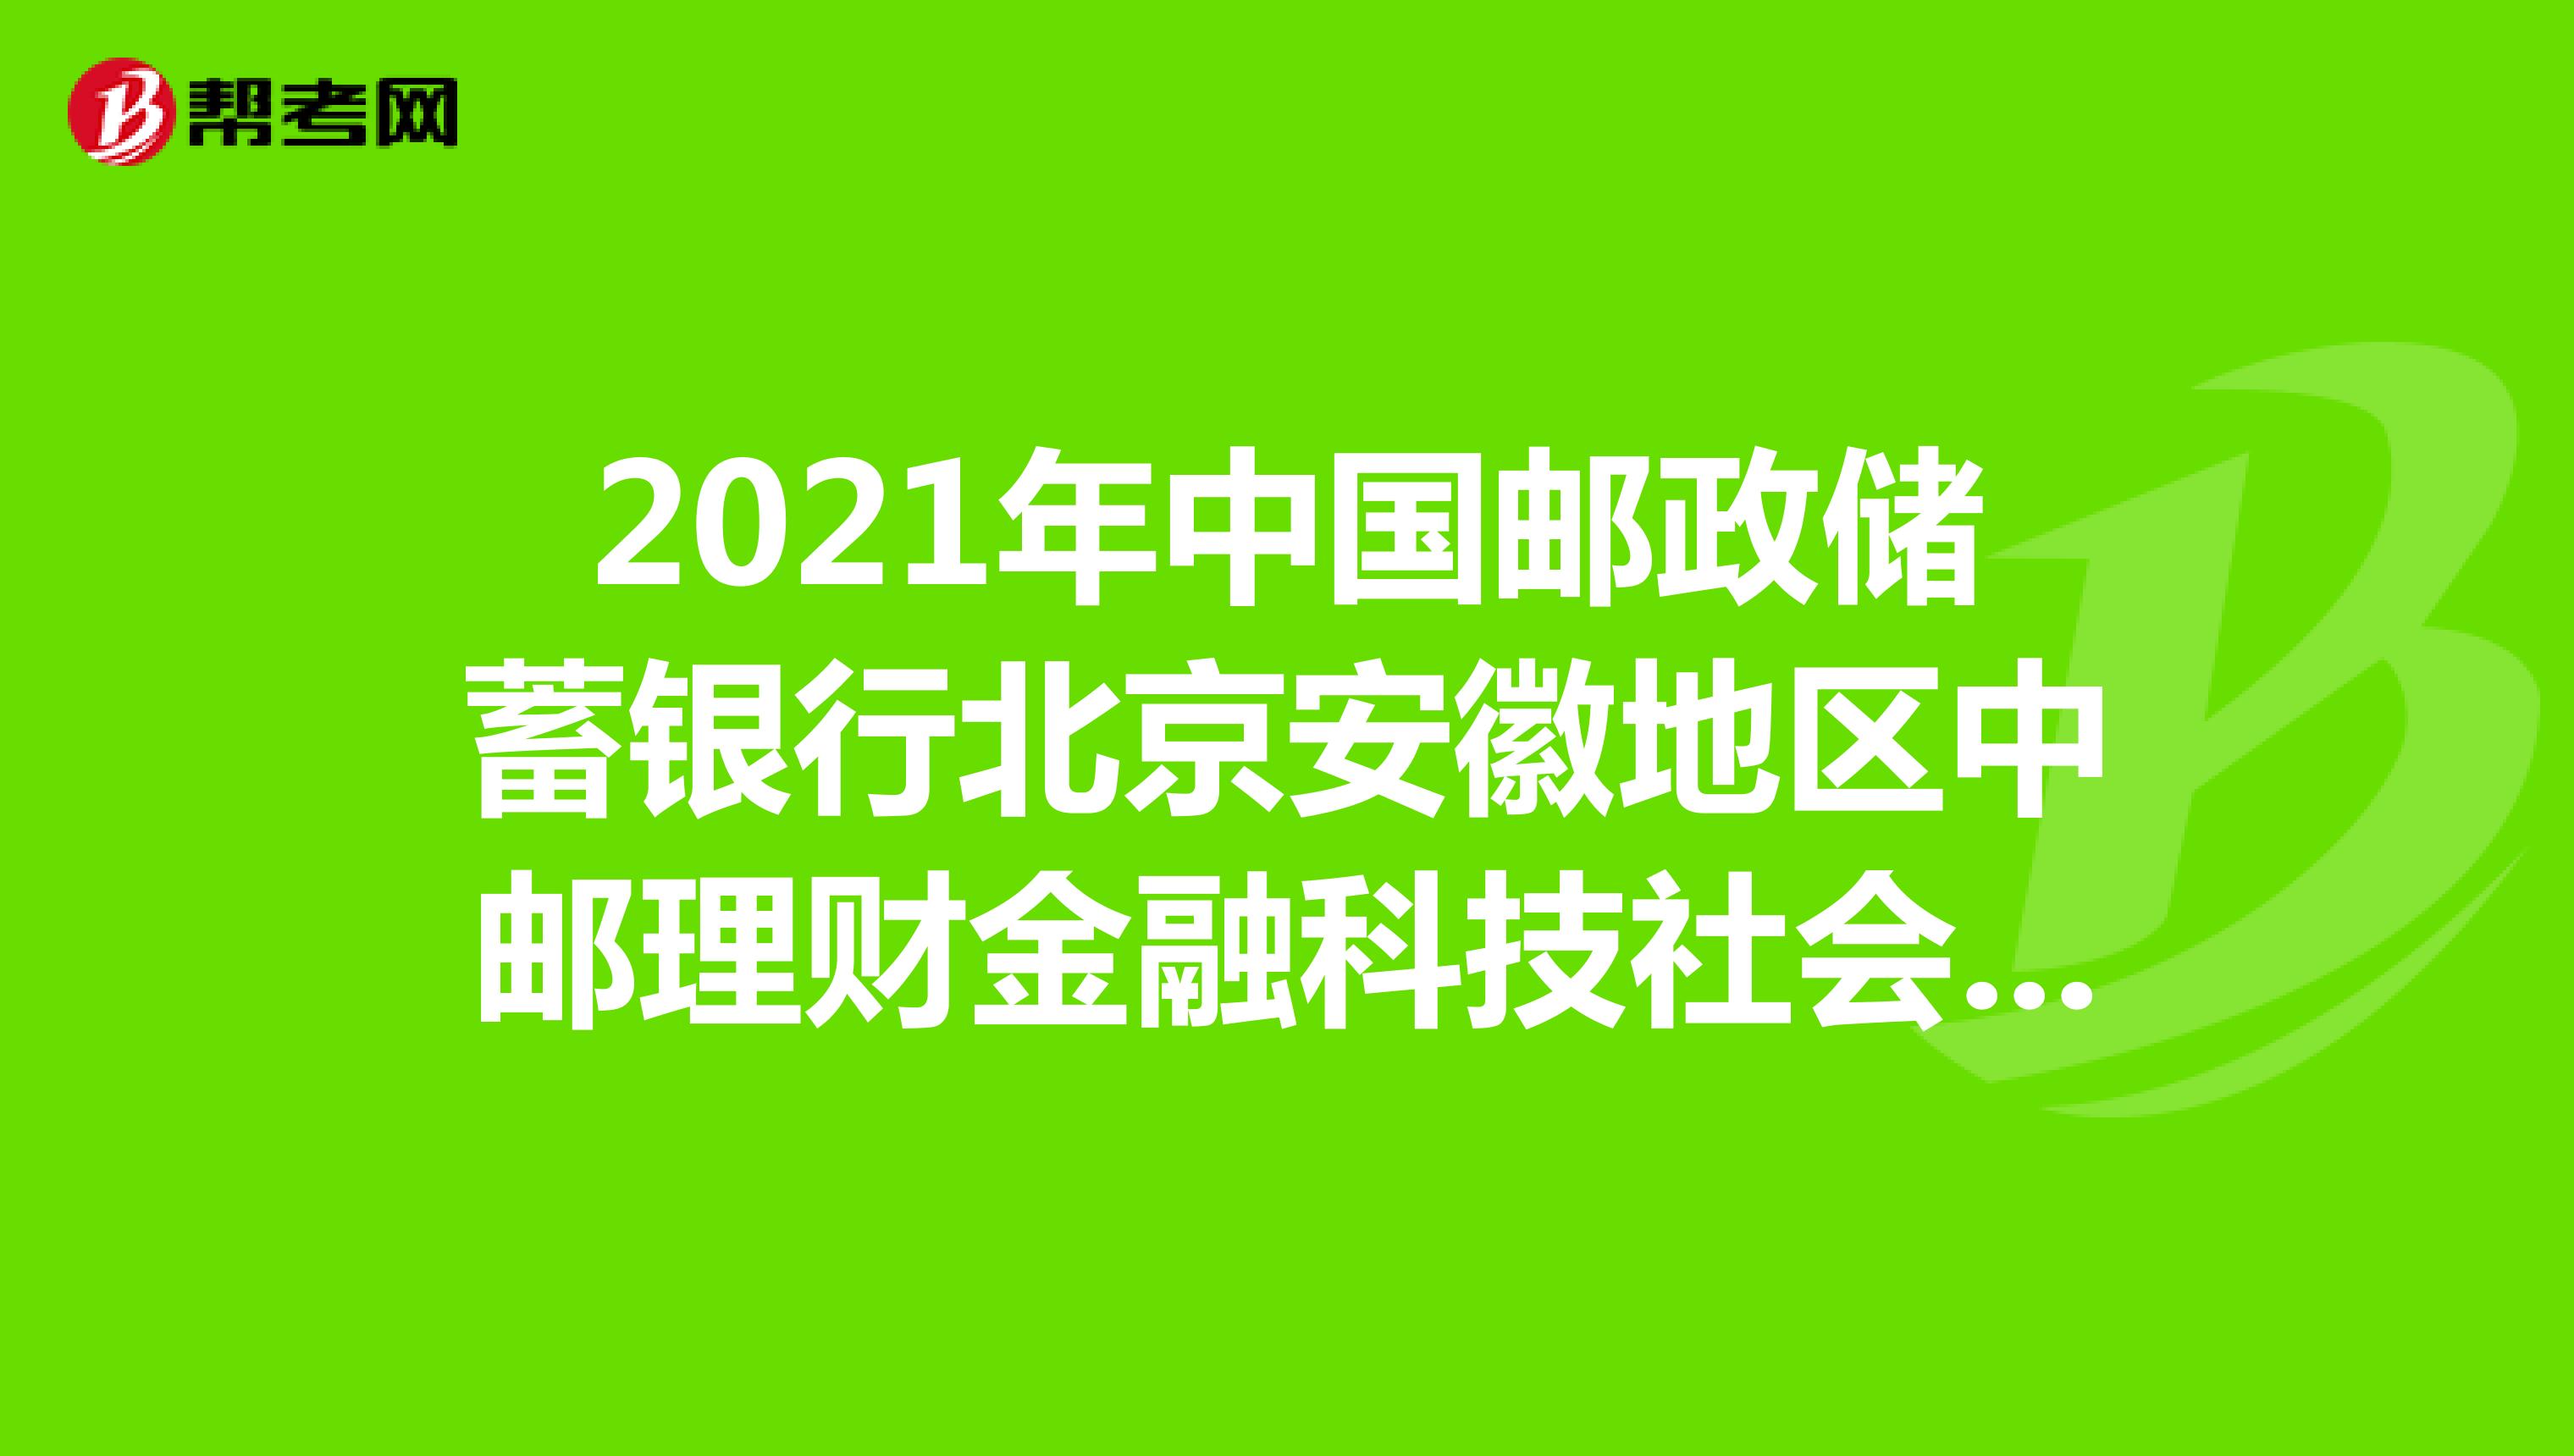 2021年中国邮政储蓄银行北京安徽地区中邮理财金融科技社会招聘公告